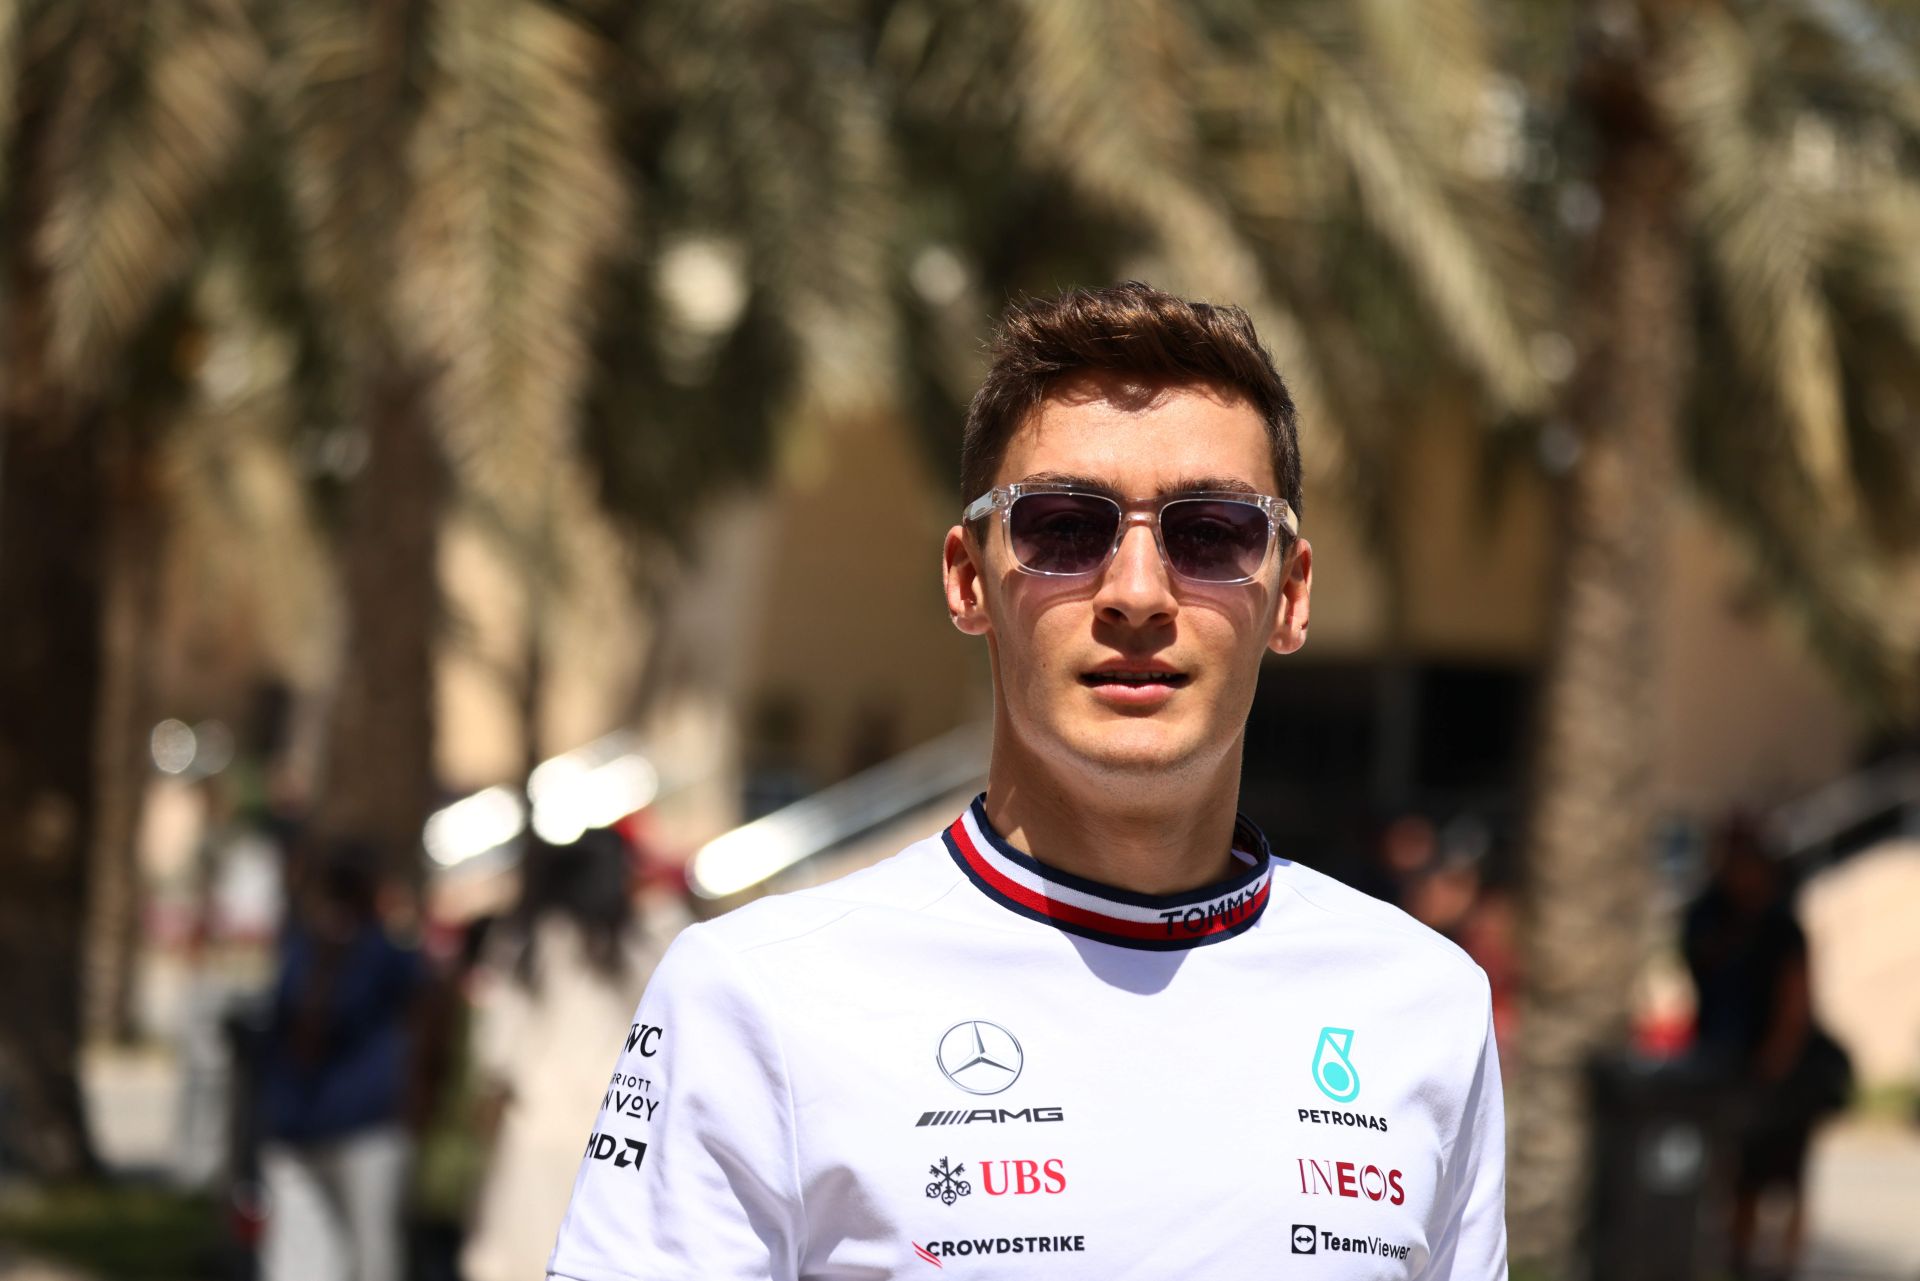 Russell kontrolliert die Erwartungen, sagt, dass das W13-Upgrade „Zeit brauchen sollte“ – Formula 1 News